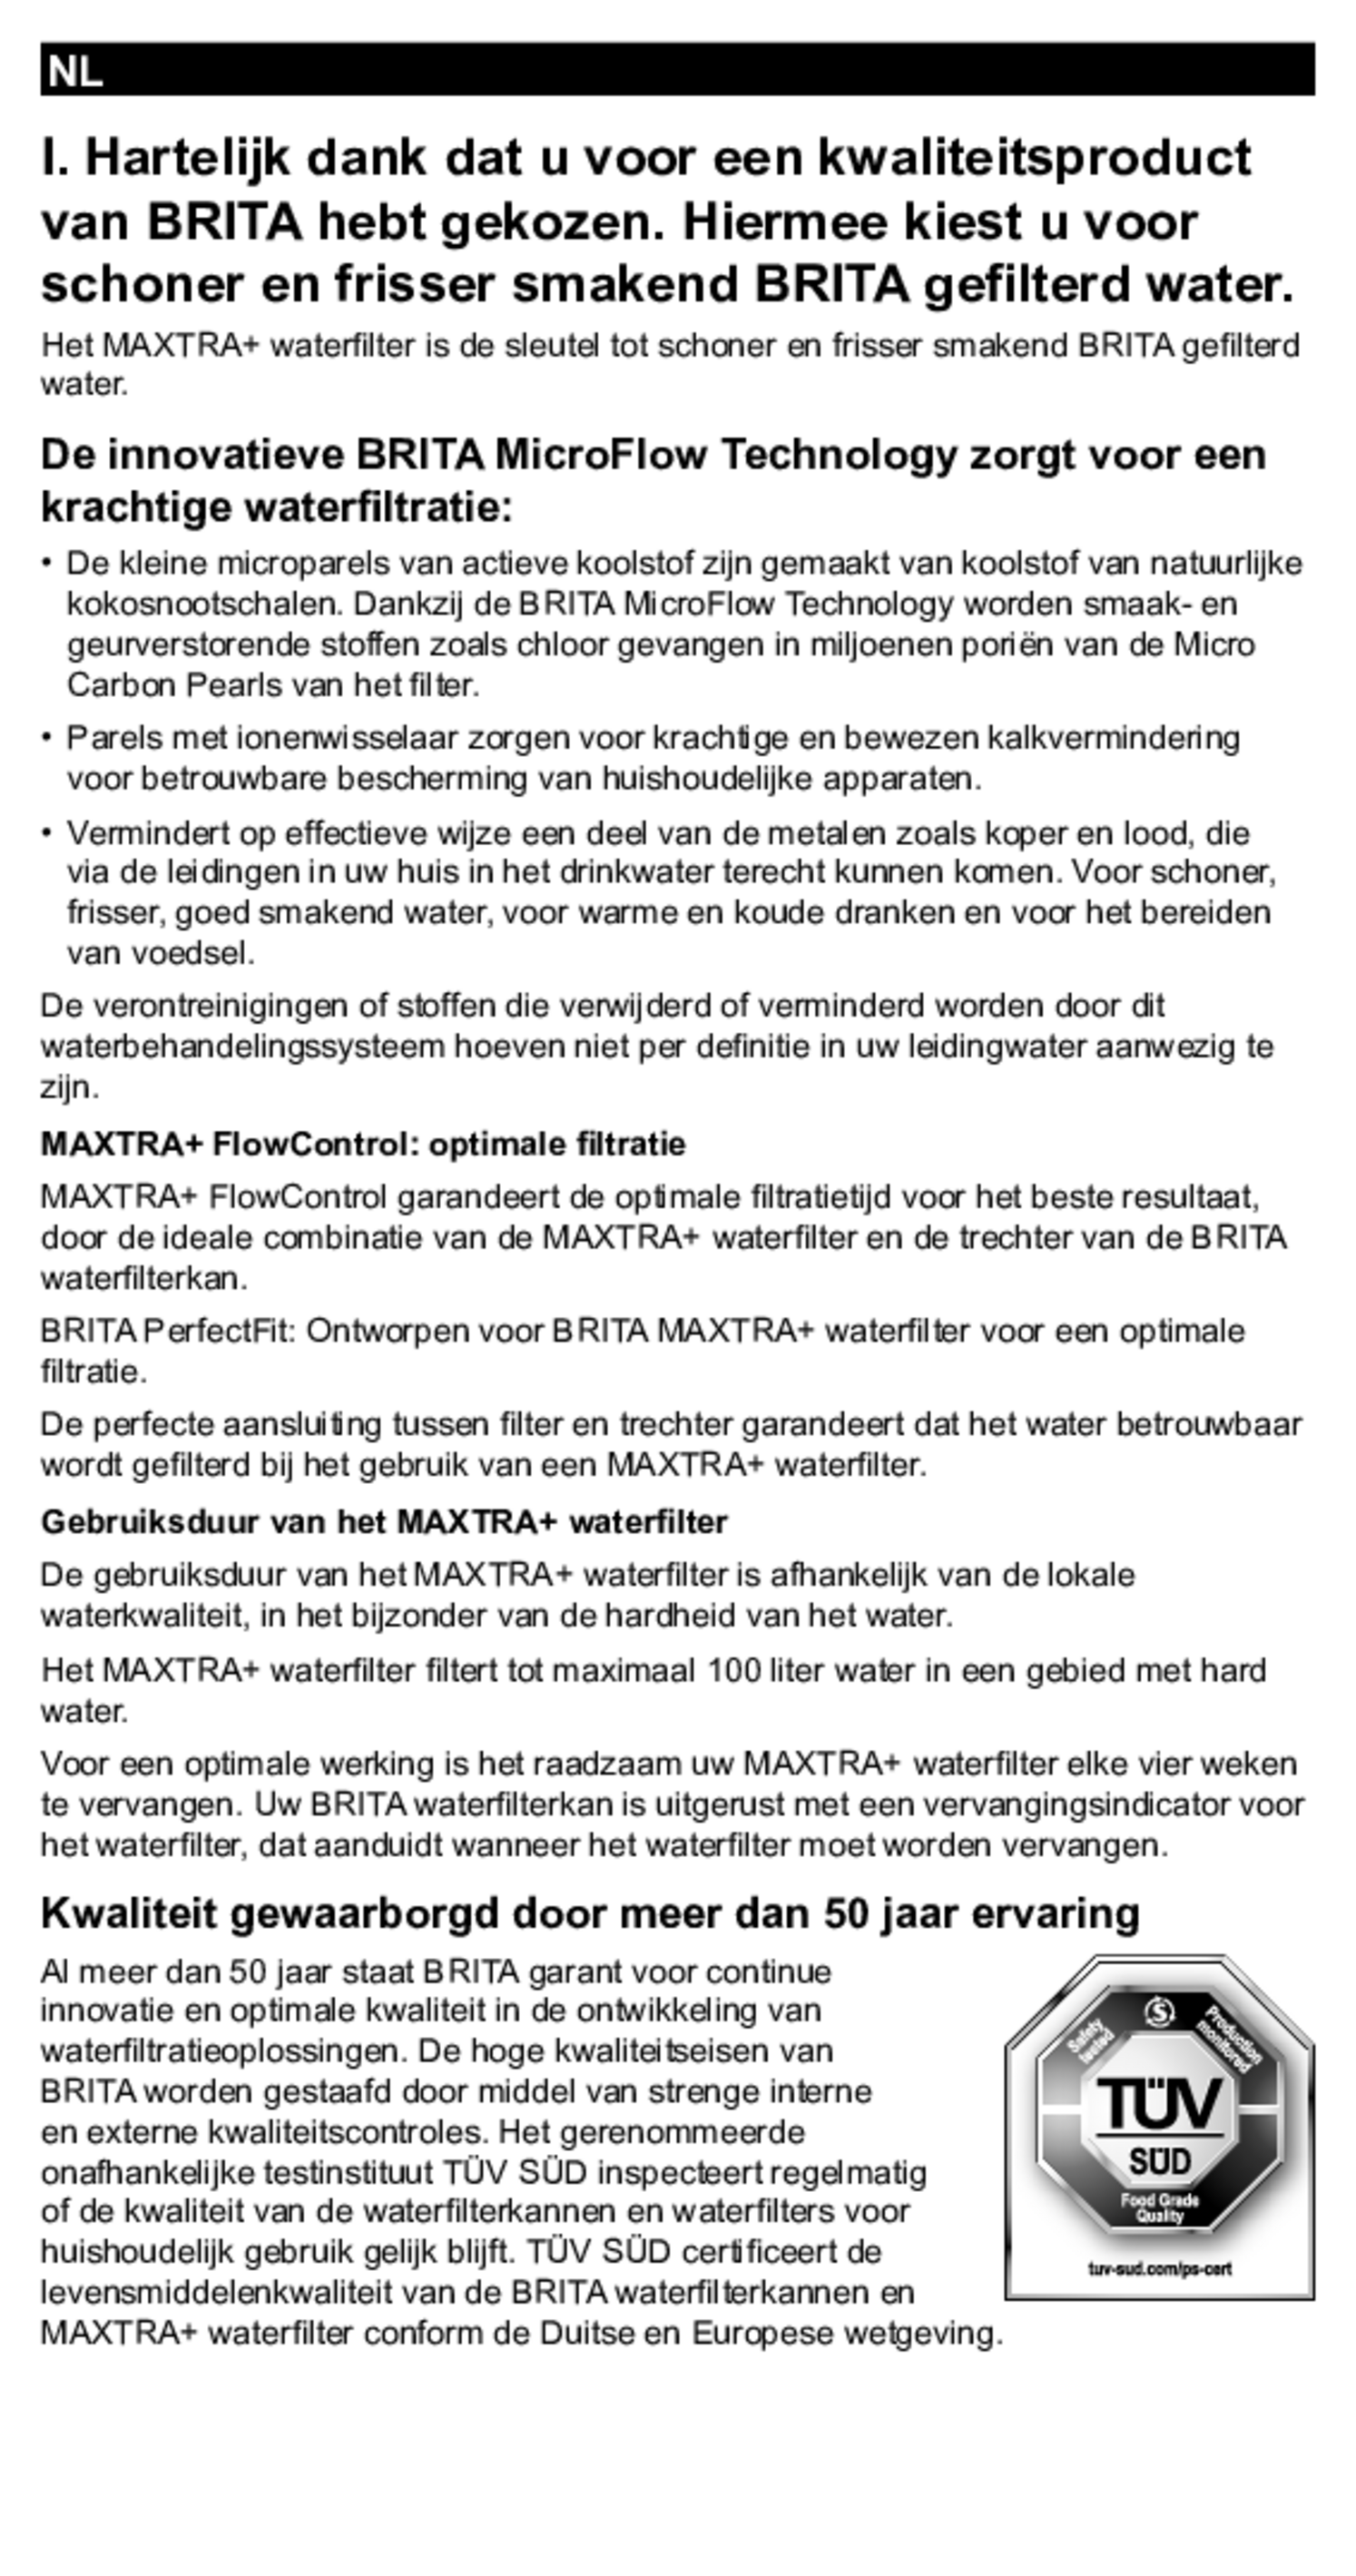 Marella Waterfilterkan Wit + 6 Maxtra Filterpatronen afbeelding van document #20, gebruiksaanwijzing